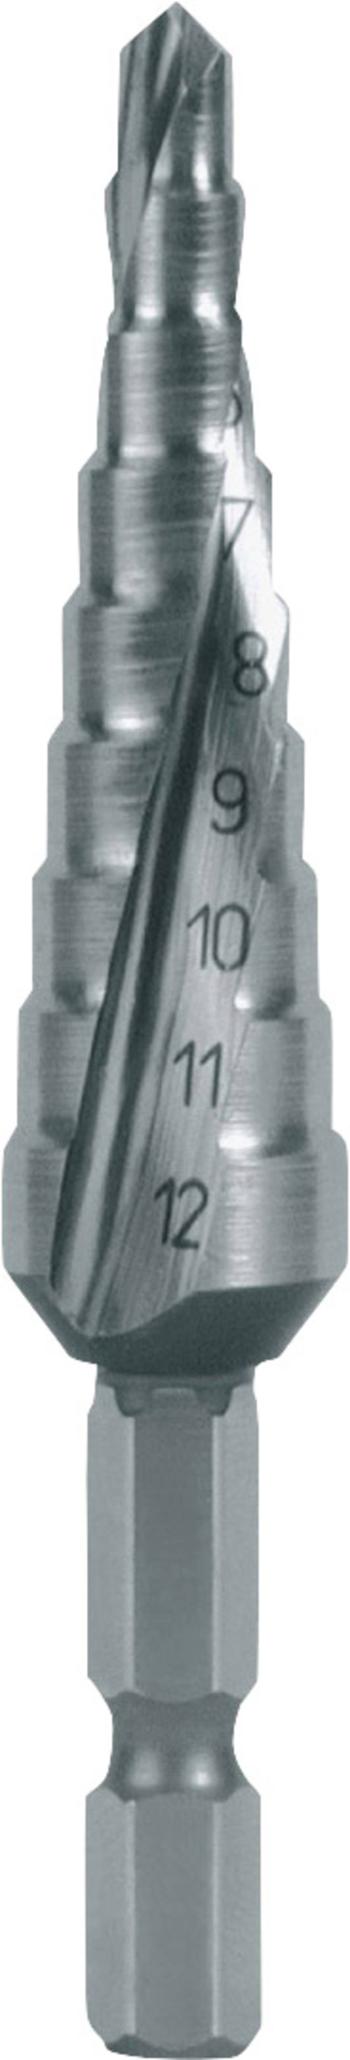 RUKO 101050-9H stupňovitý vrták  4 - 12 mm HSS Celková dĺžka 72 mm   1 ks